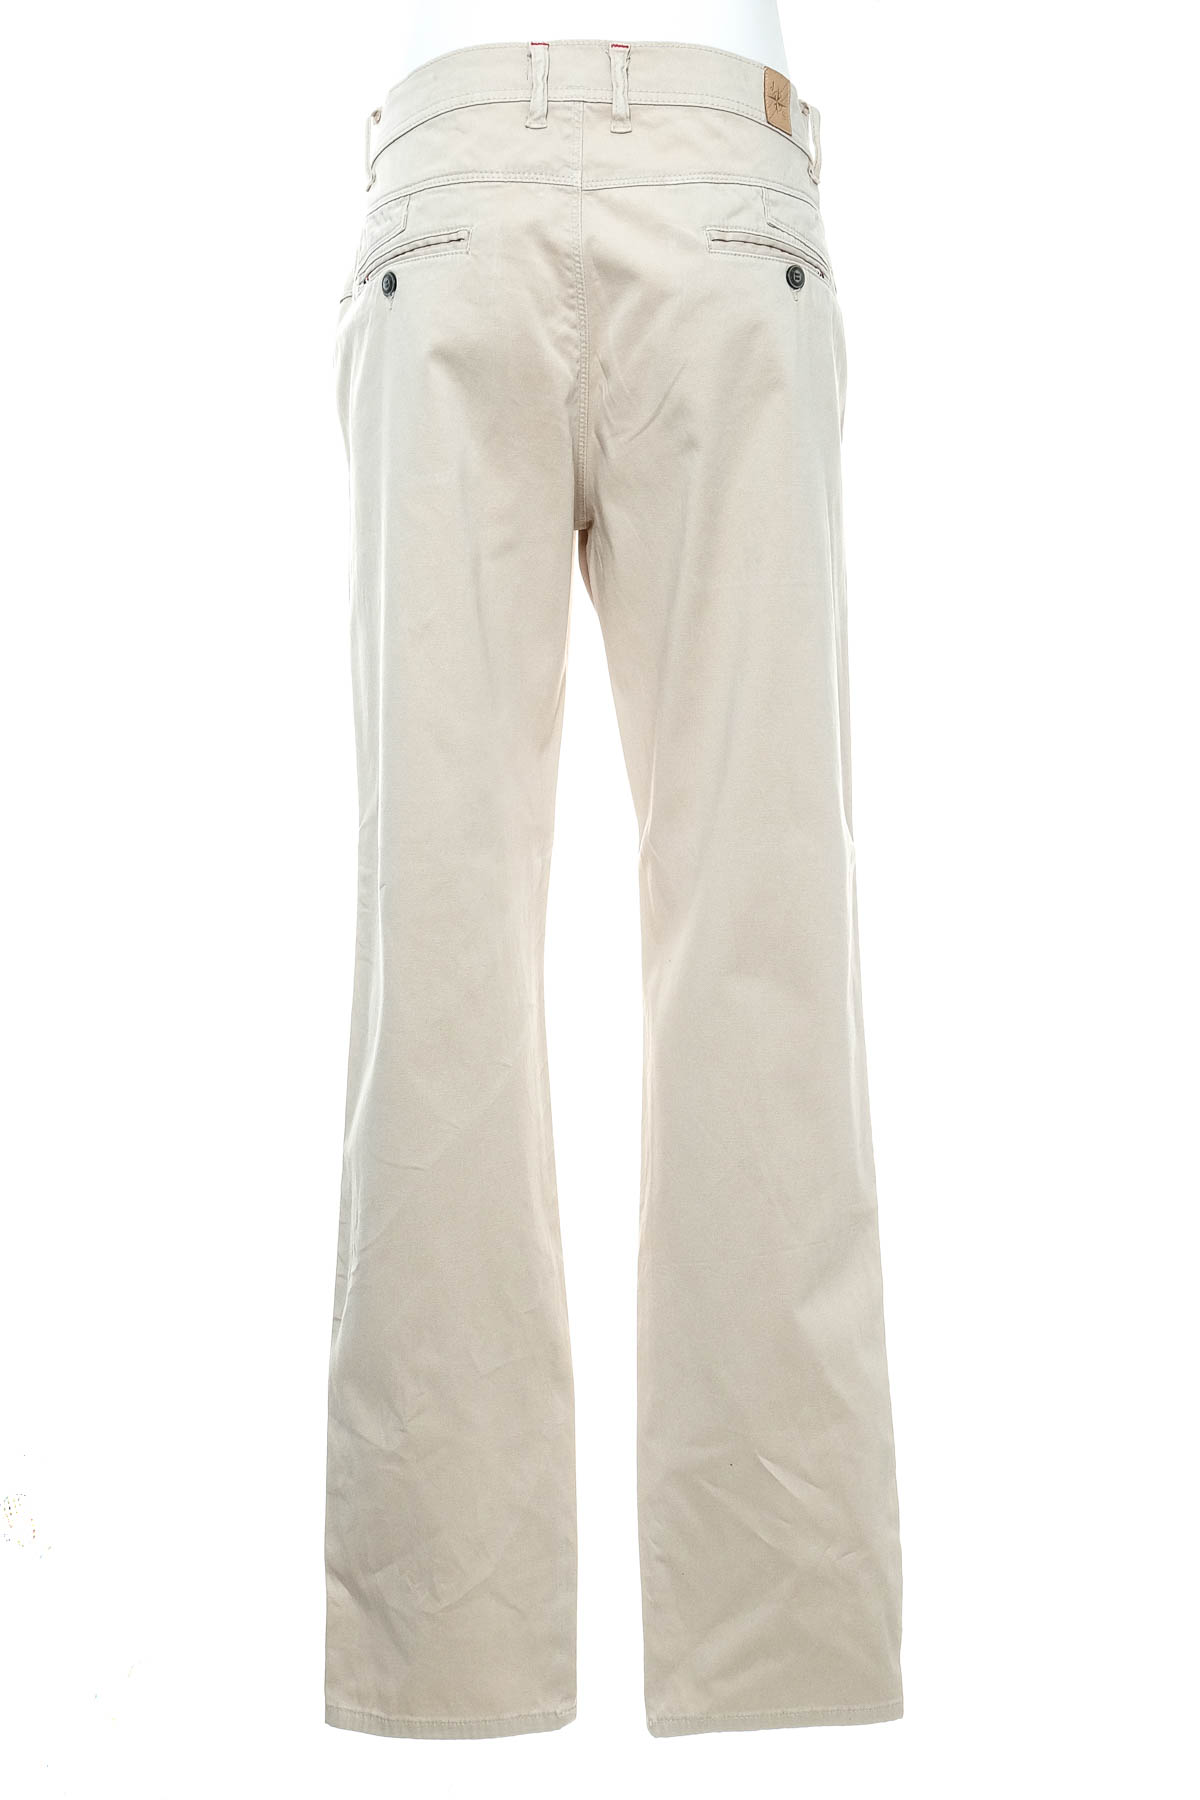 Pantalon pentru bărbați - JIMMY SANDERS - 1